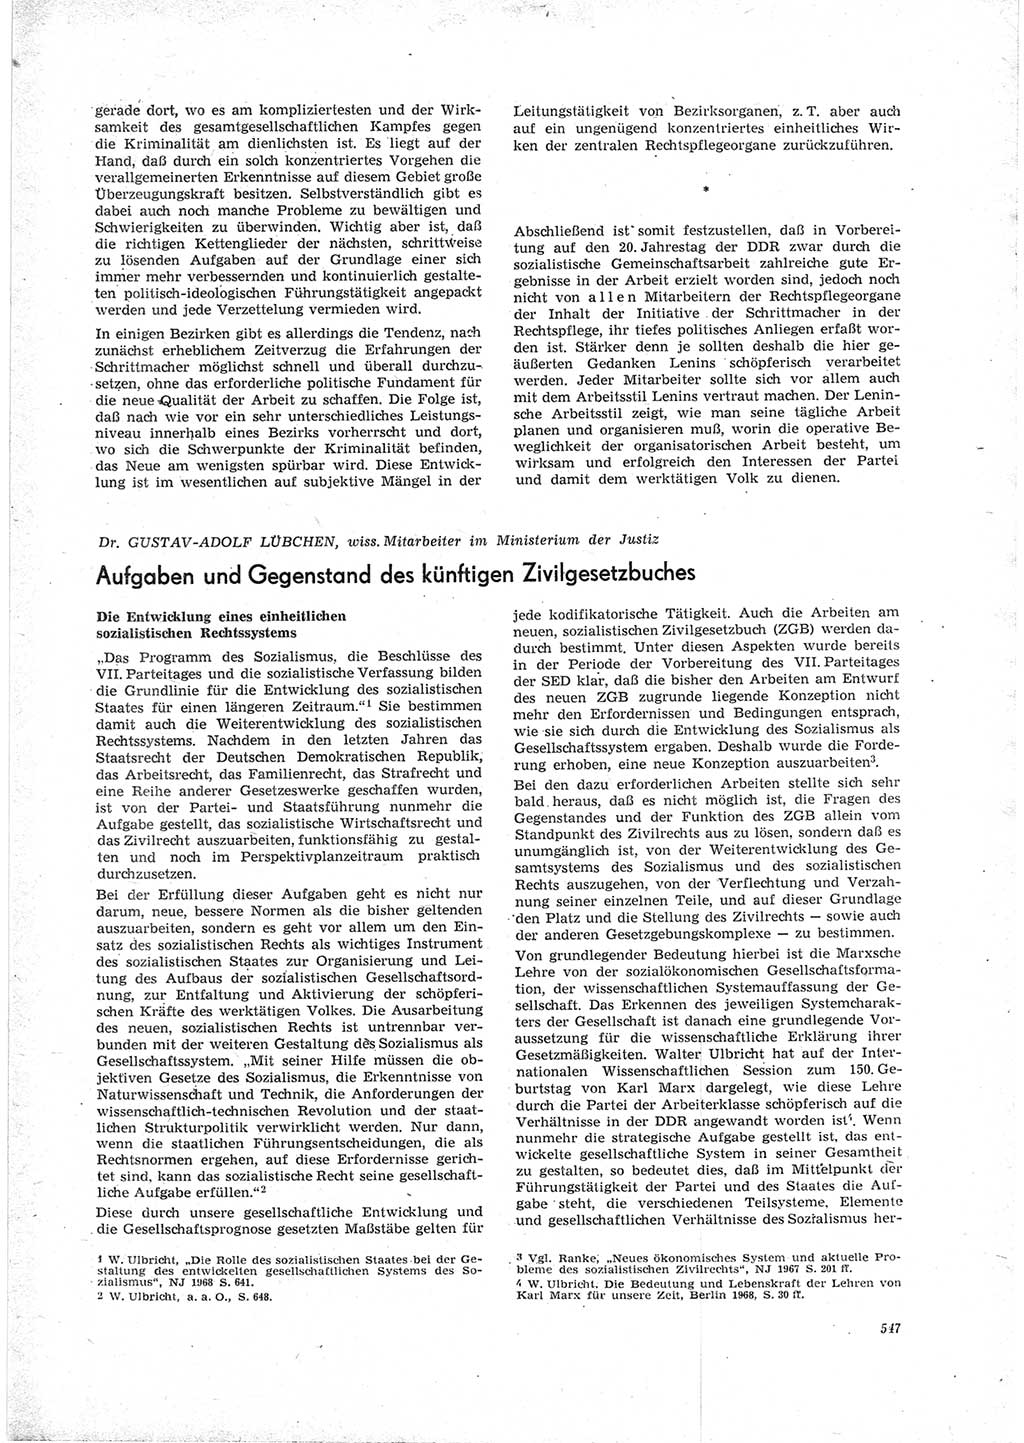 Neue Justiz (NJ), Zeitschrift für Recht und Rechtswissenschaft [Deutsche Demokratische Republik (DDR)], 23. Jahrgang 1969, Seite 547 (NJ DDR 1969, S. 547)